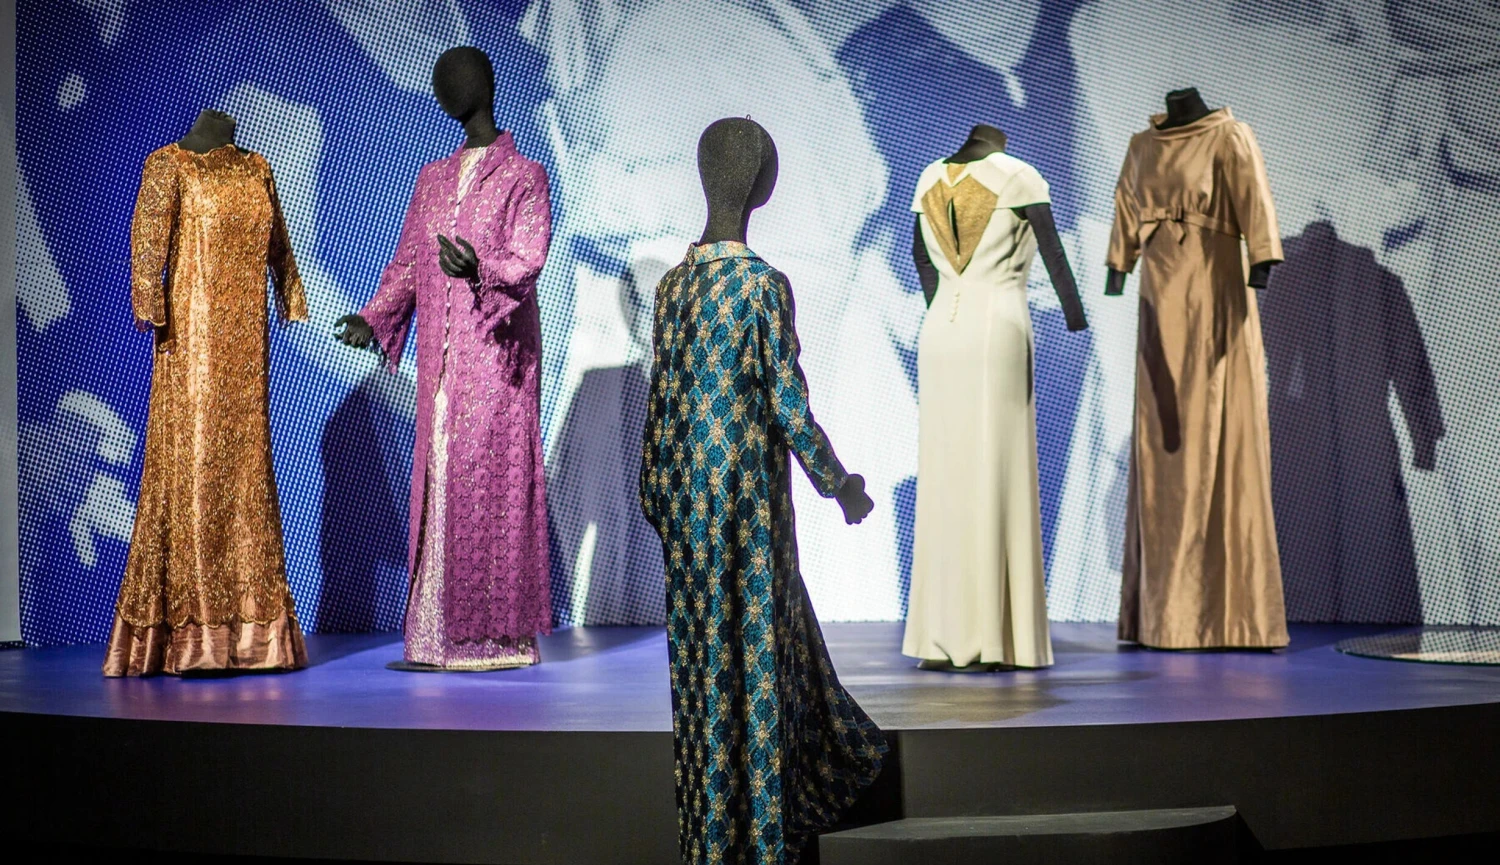 Šaty Hepburn i princezny Diany. Irské muzeum oslavuje nejen hollywoodský šarm